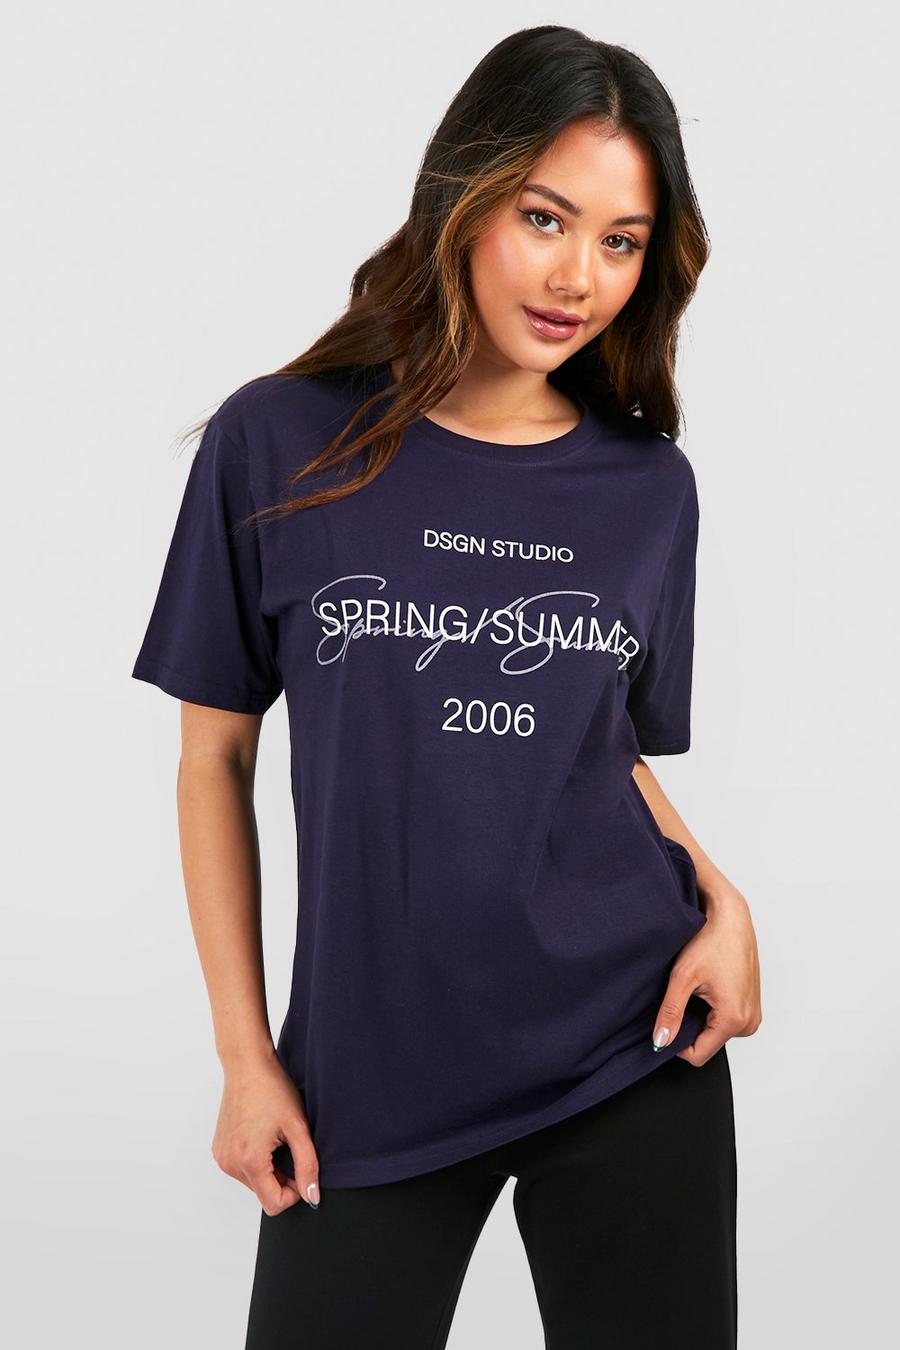 Camiseta oversize con estampado Dsgn Studio en el bolsillo, Navy azul marino